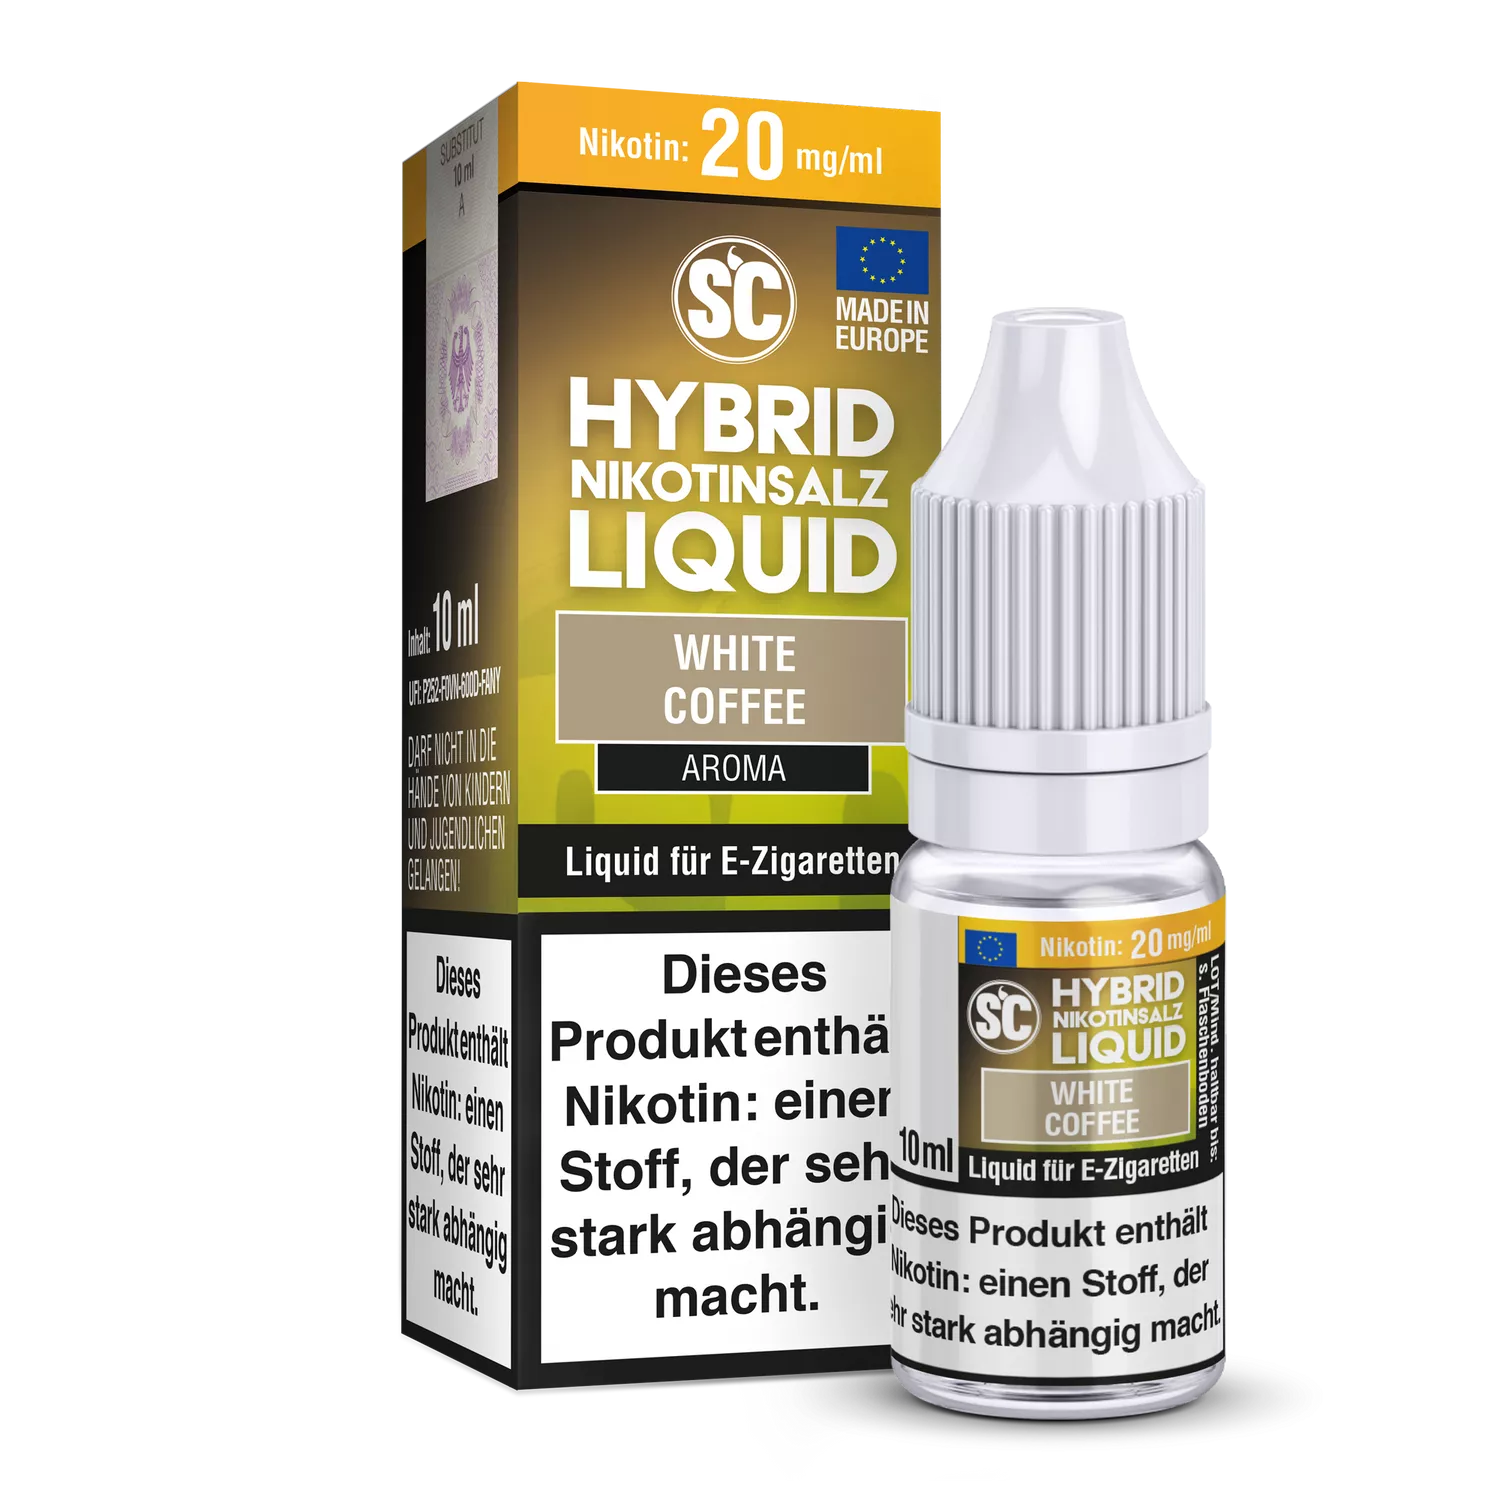 SC Hybrid Nikotinsalz Liquid White Coffee - 20mg/ml